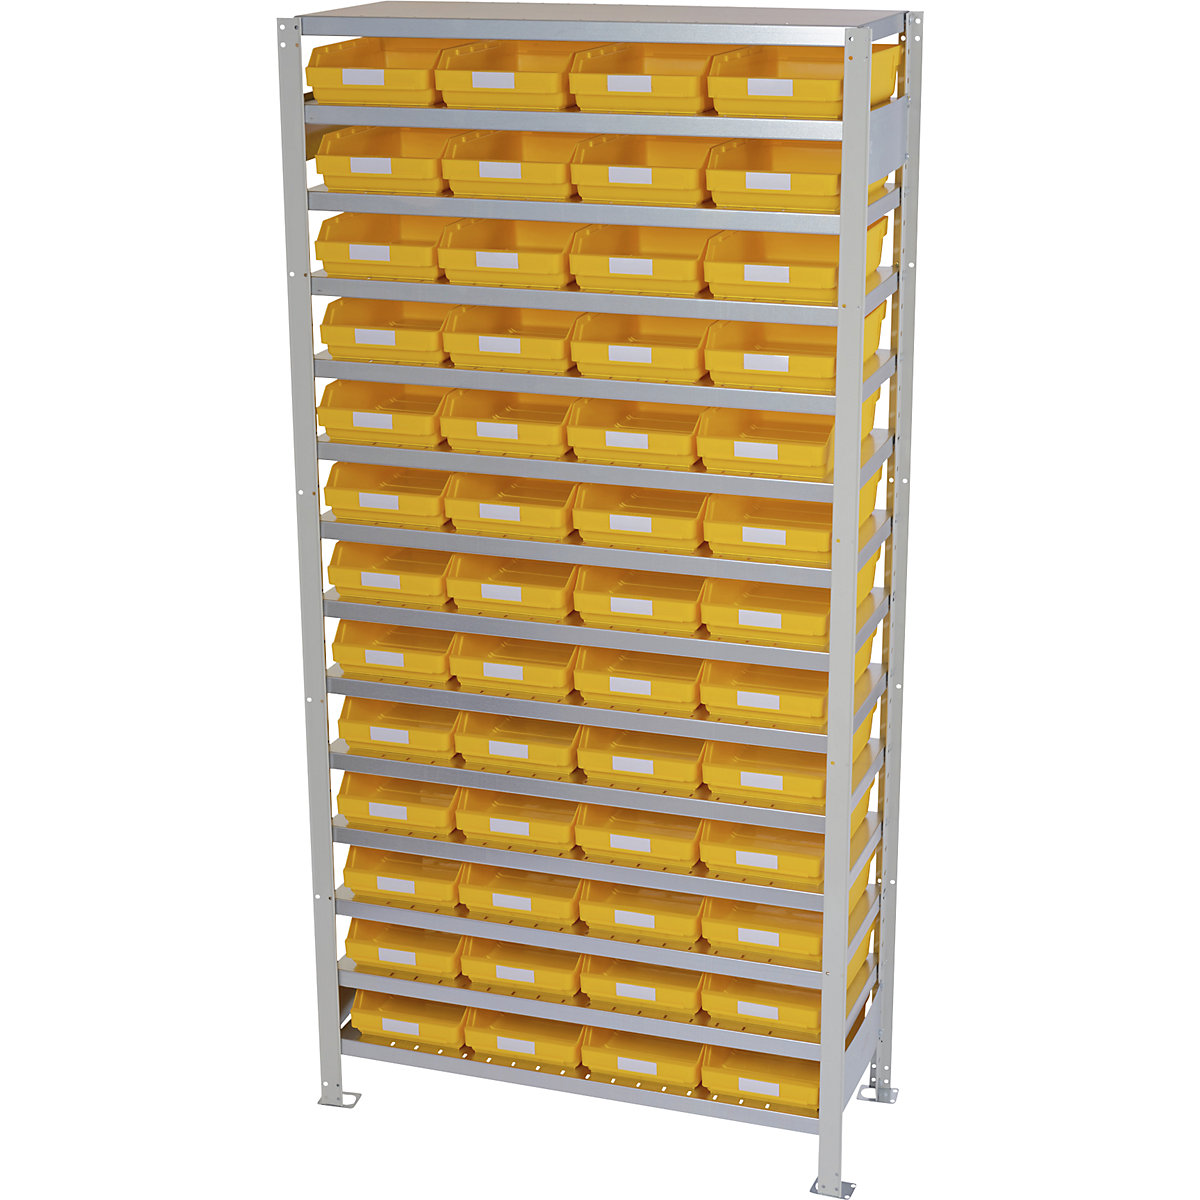 Estante de encaixar com caixas para estante – STEMO, altura da estante 2100 mm, estante básica, profundidade 300 mm, 52 caixas amarelas-5